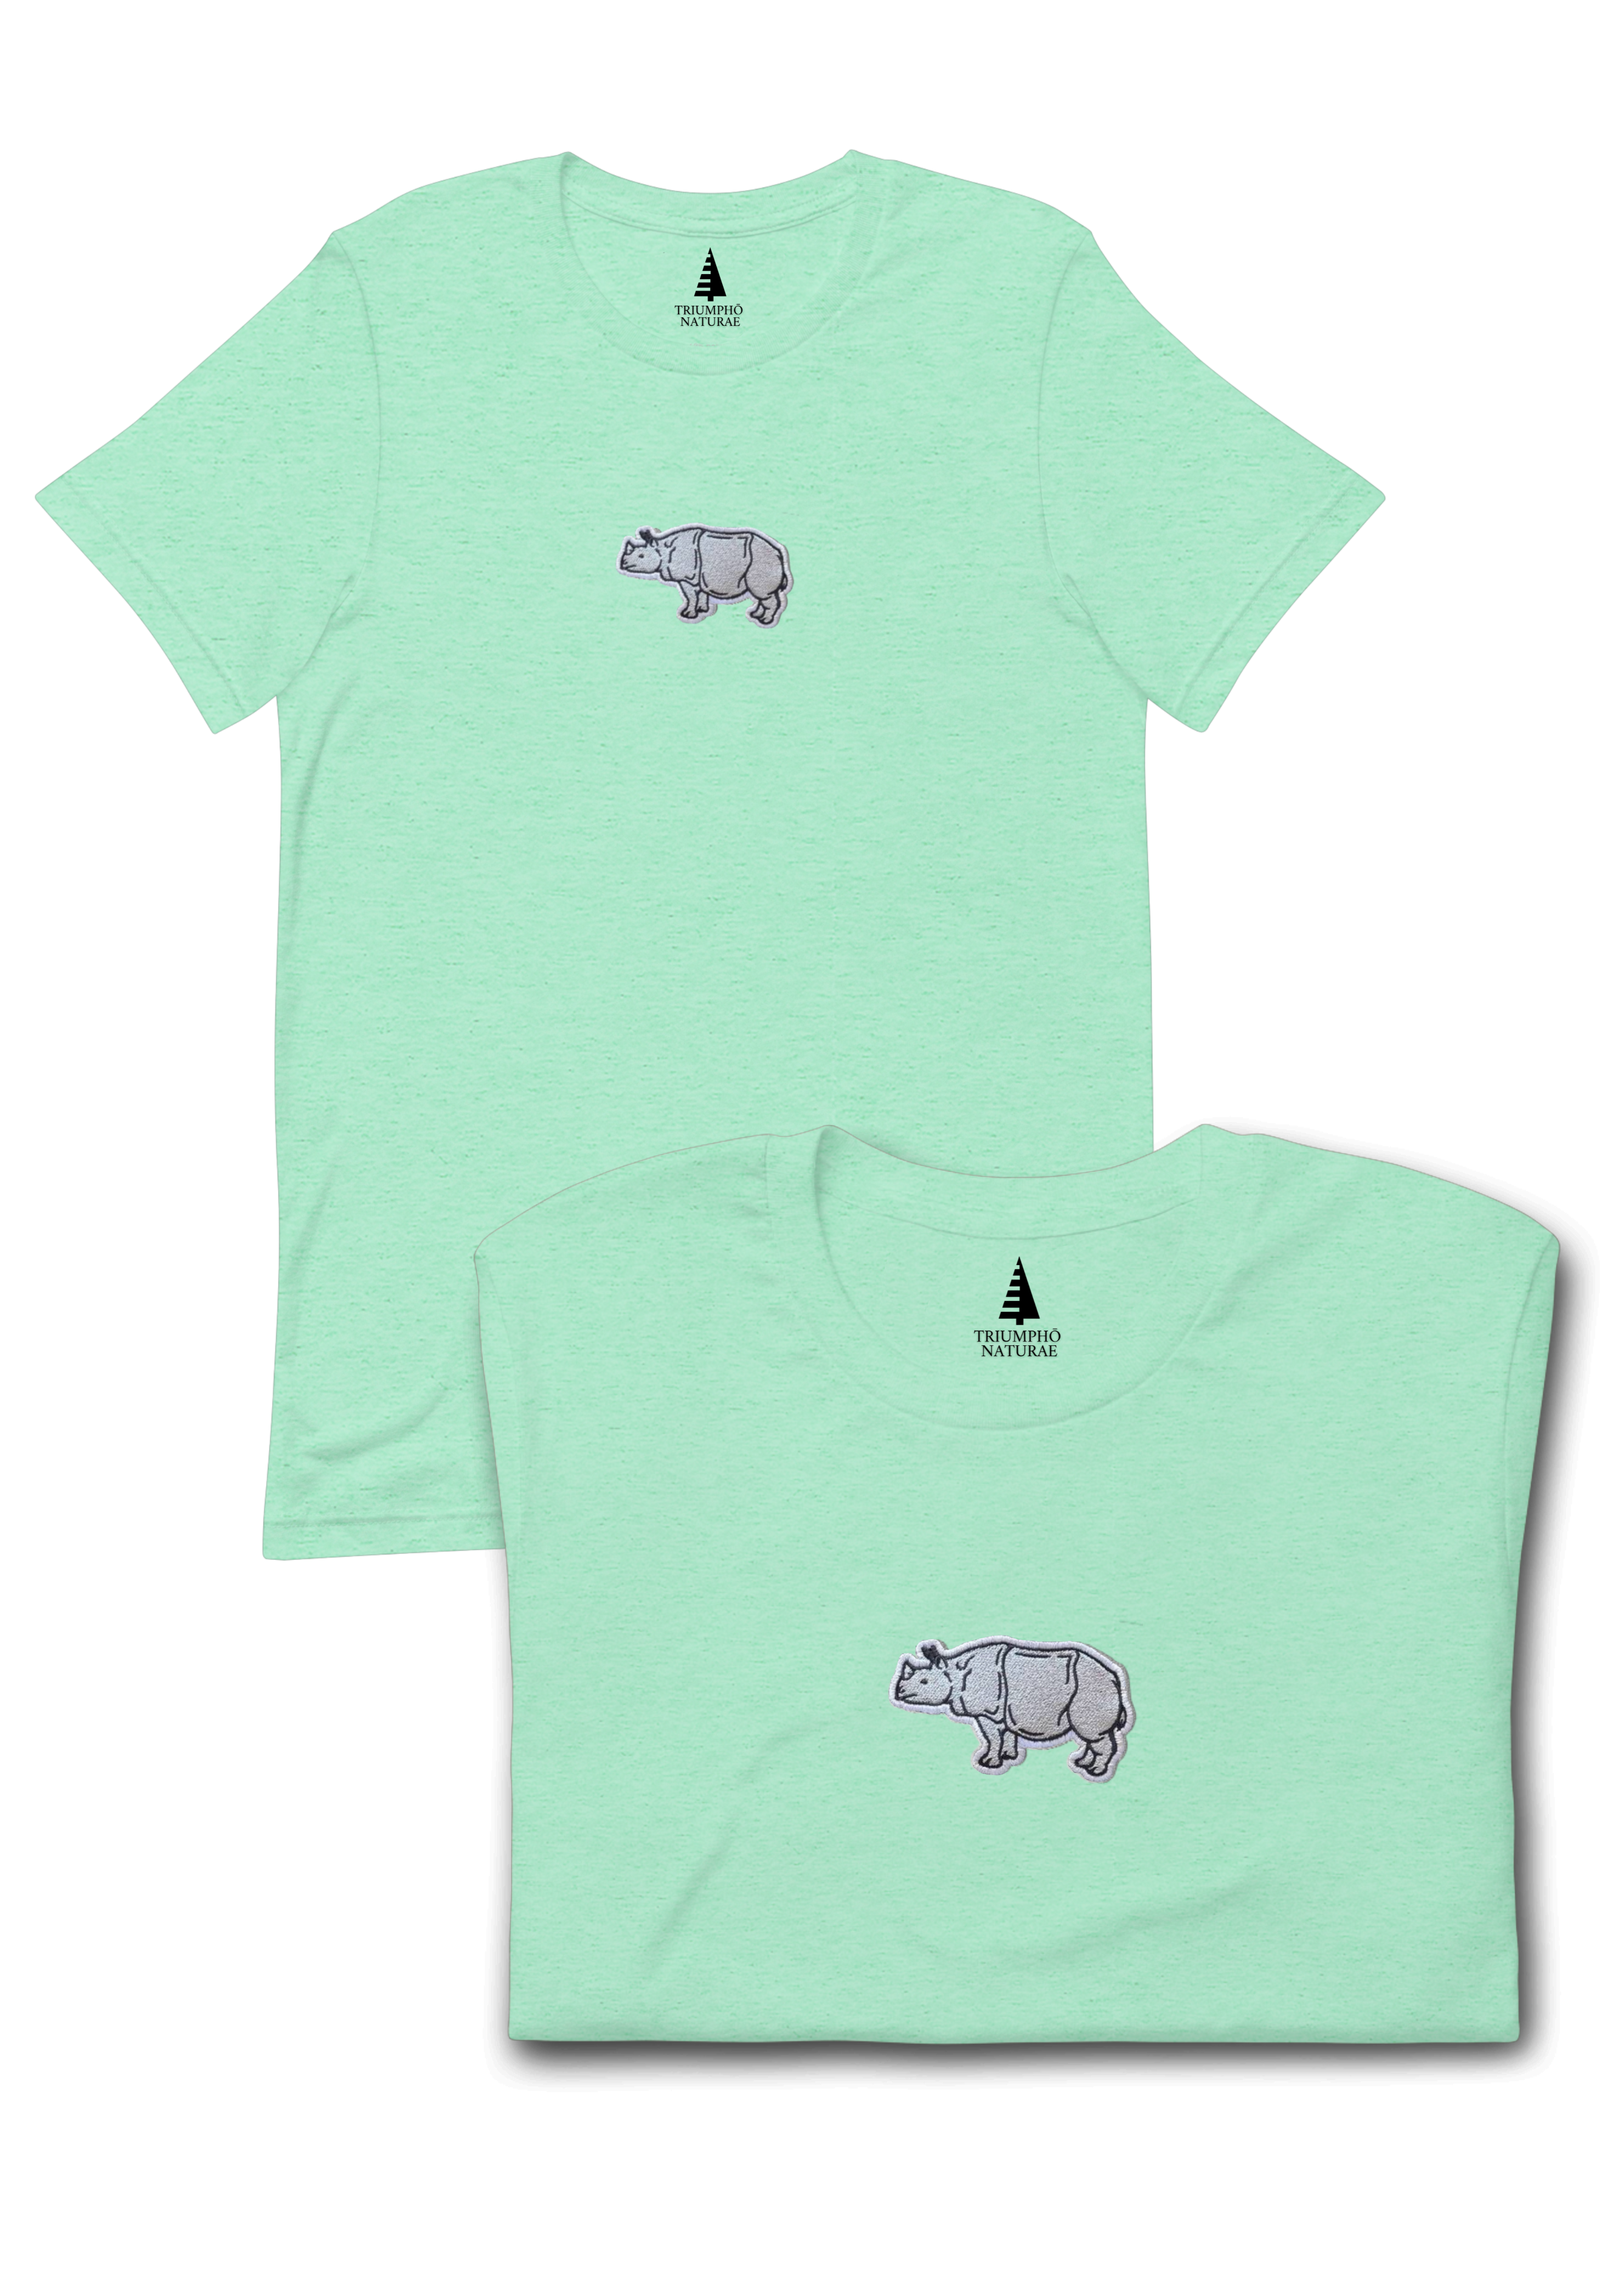 Sumatran rhino unisex t-shirt